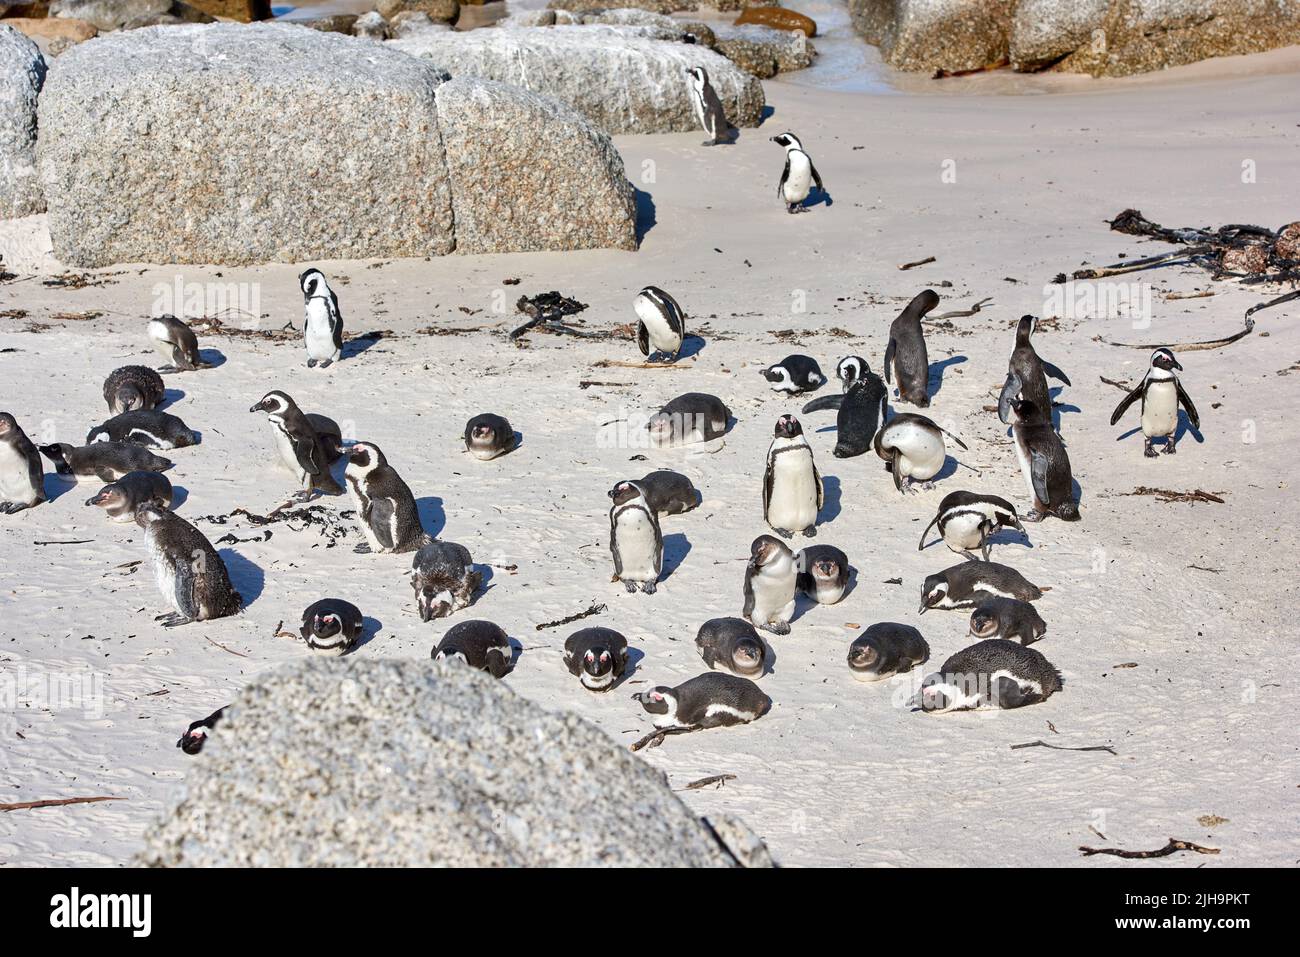 Gruppe von Pinguinen, die sich in der Nähe von Felsbrocken sonnen. Flugunfreie Vögel in ihrem natürlichen Lebensraum. Kolonie gefährdeter Schwarzfuß- oder Kappinguinarten bei Stockfoto